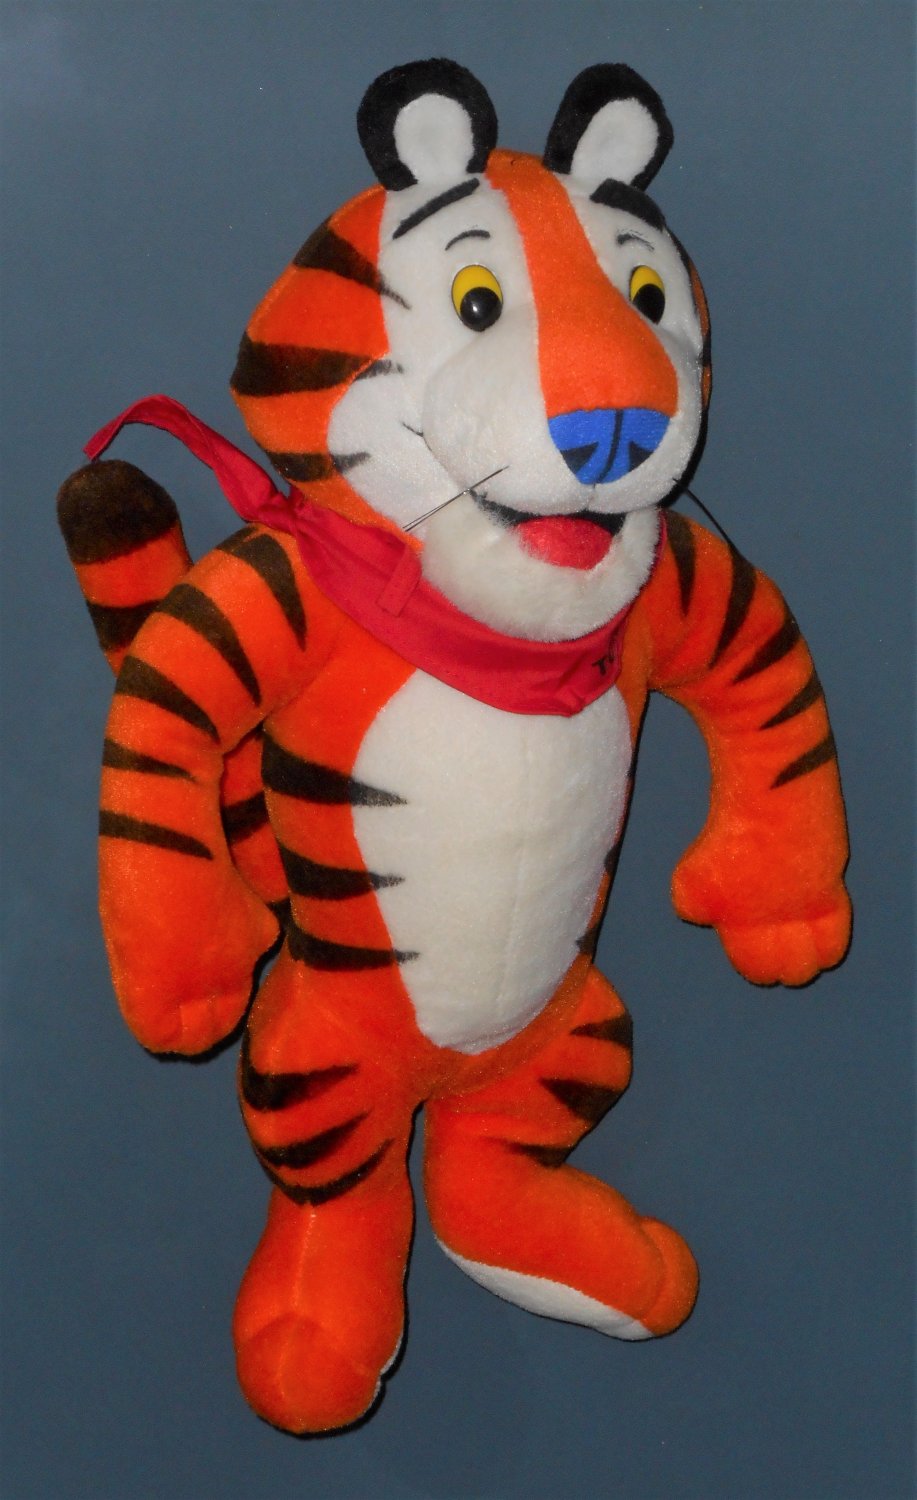 tony the tiger plush